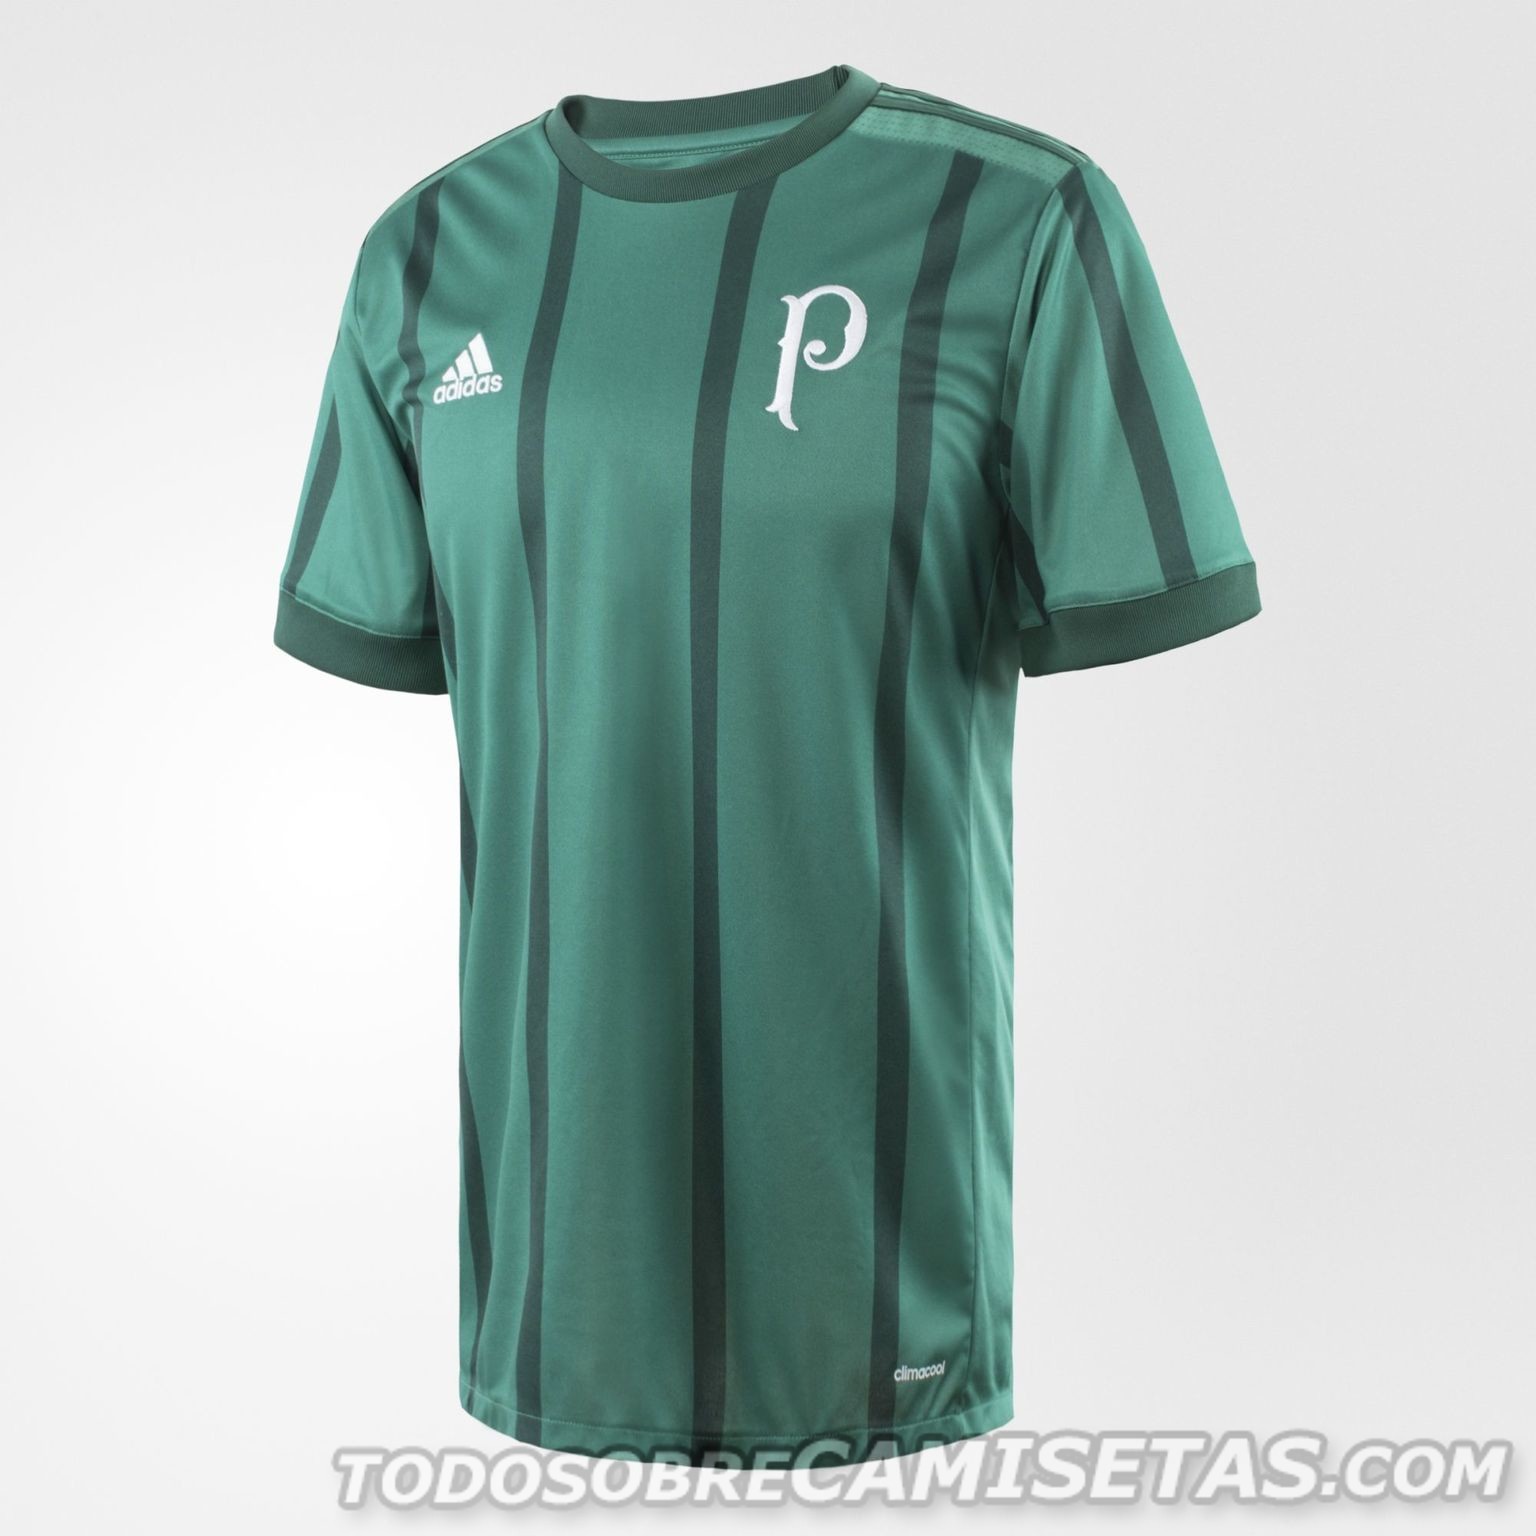 Camiseta adidas de Palmeiras 2017 Todo Sobre Camisetas